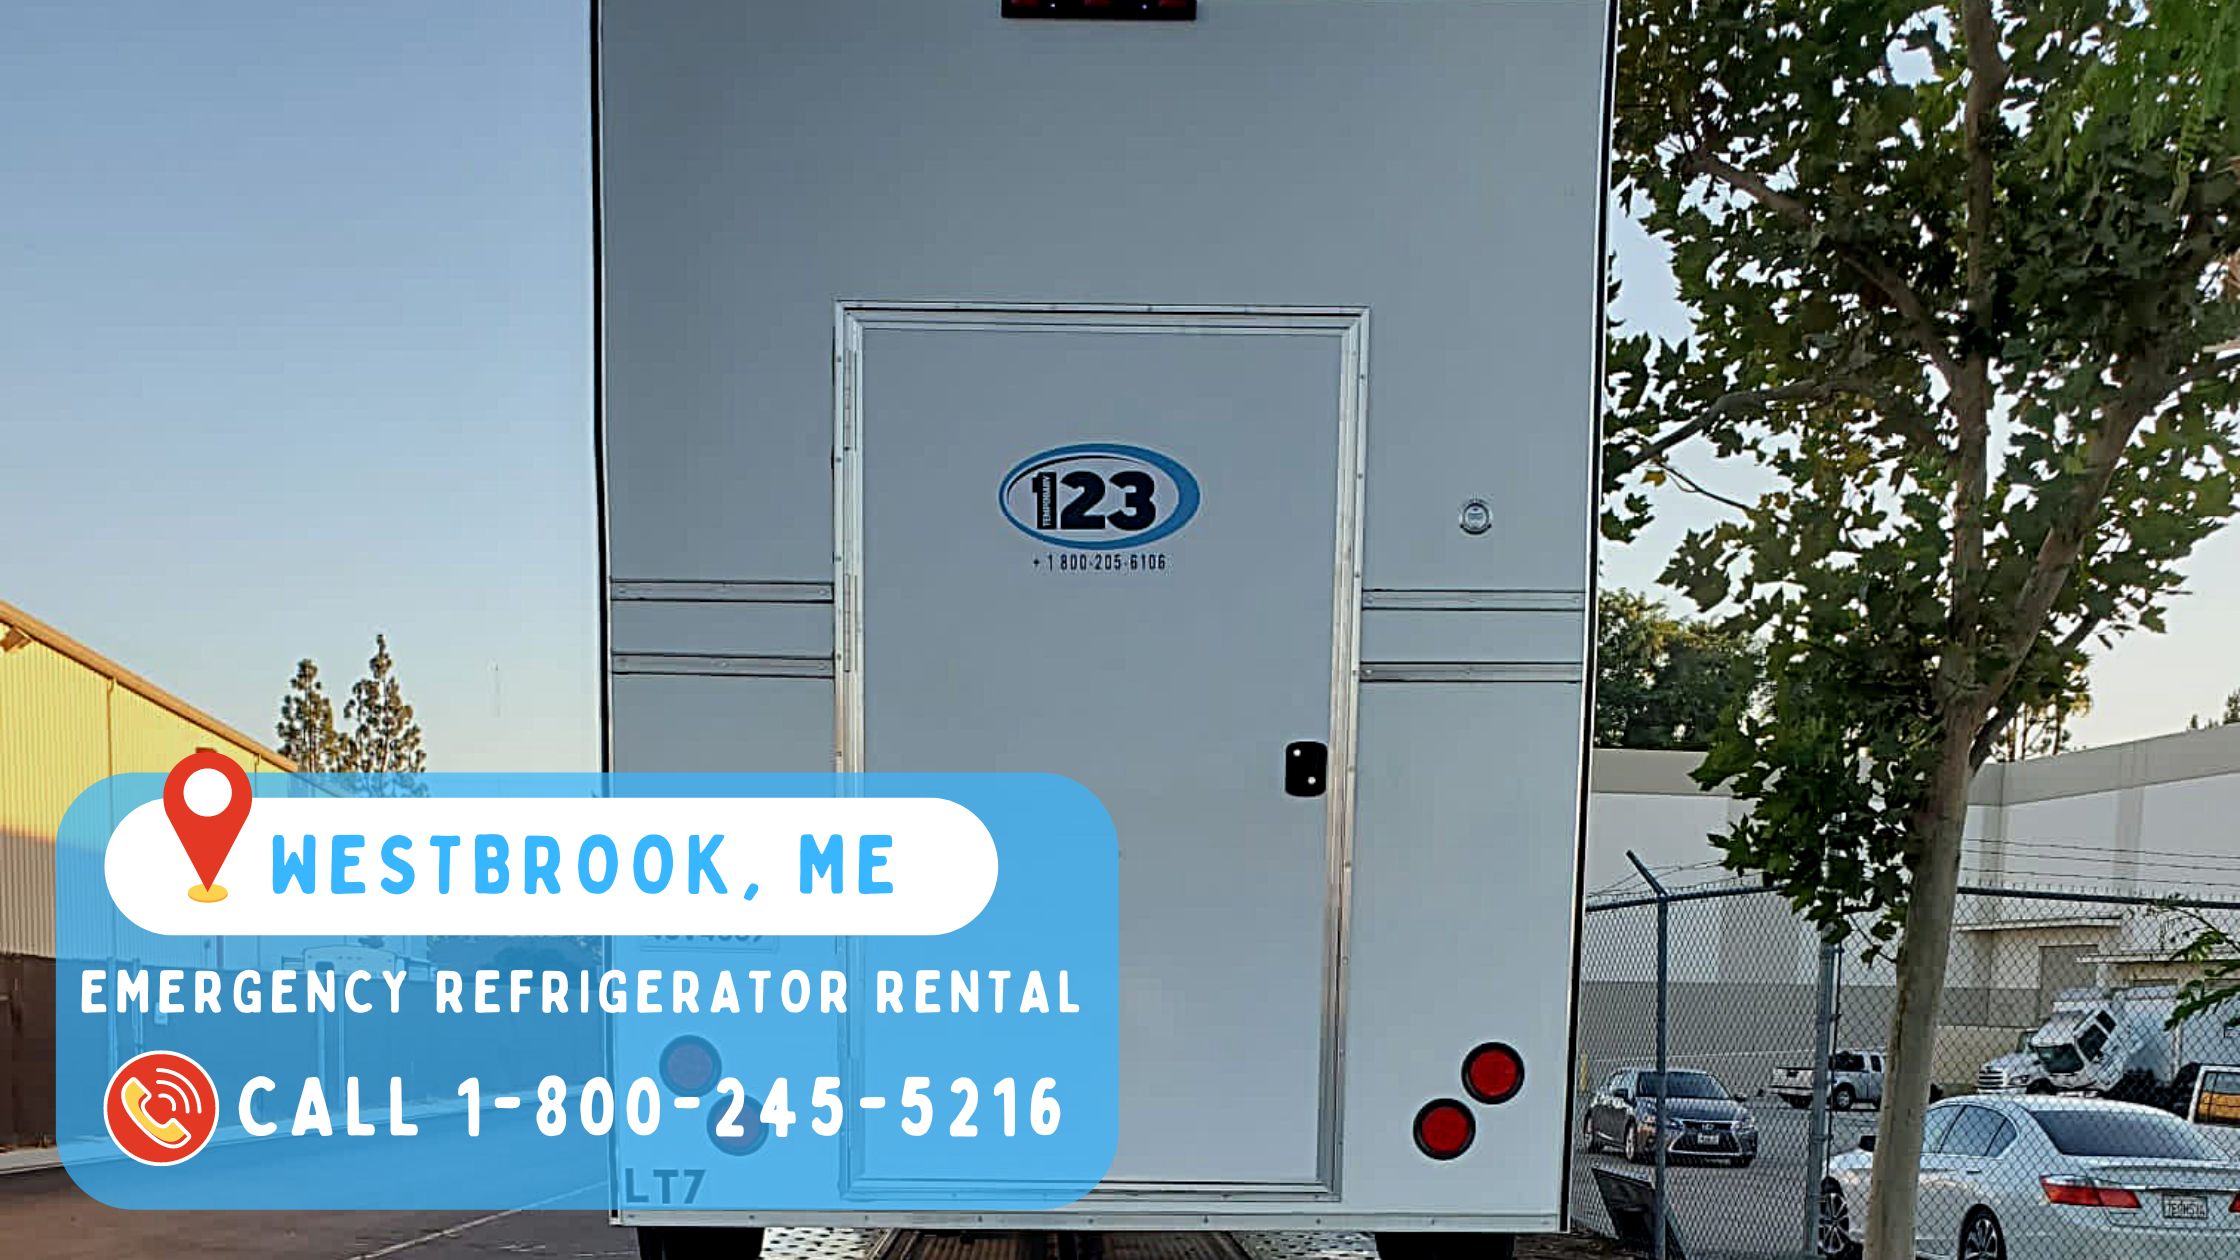 Emergency refrigerator rental in Westbrook